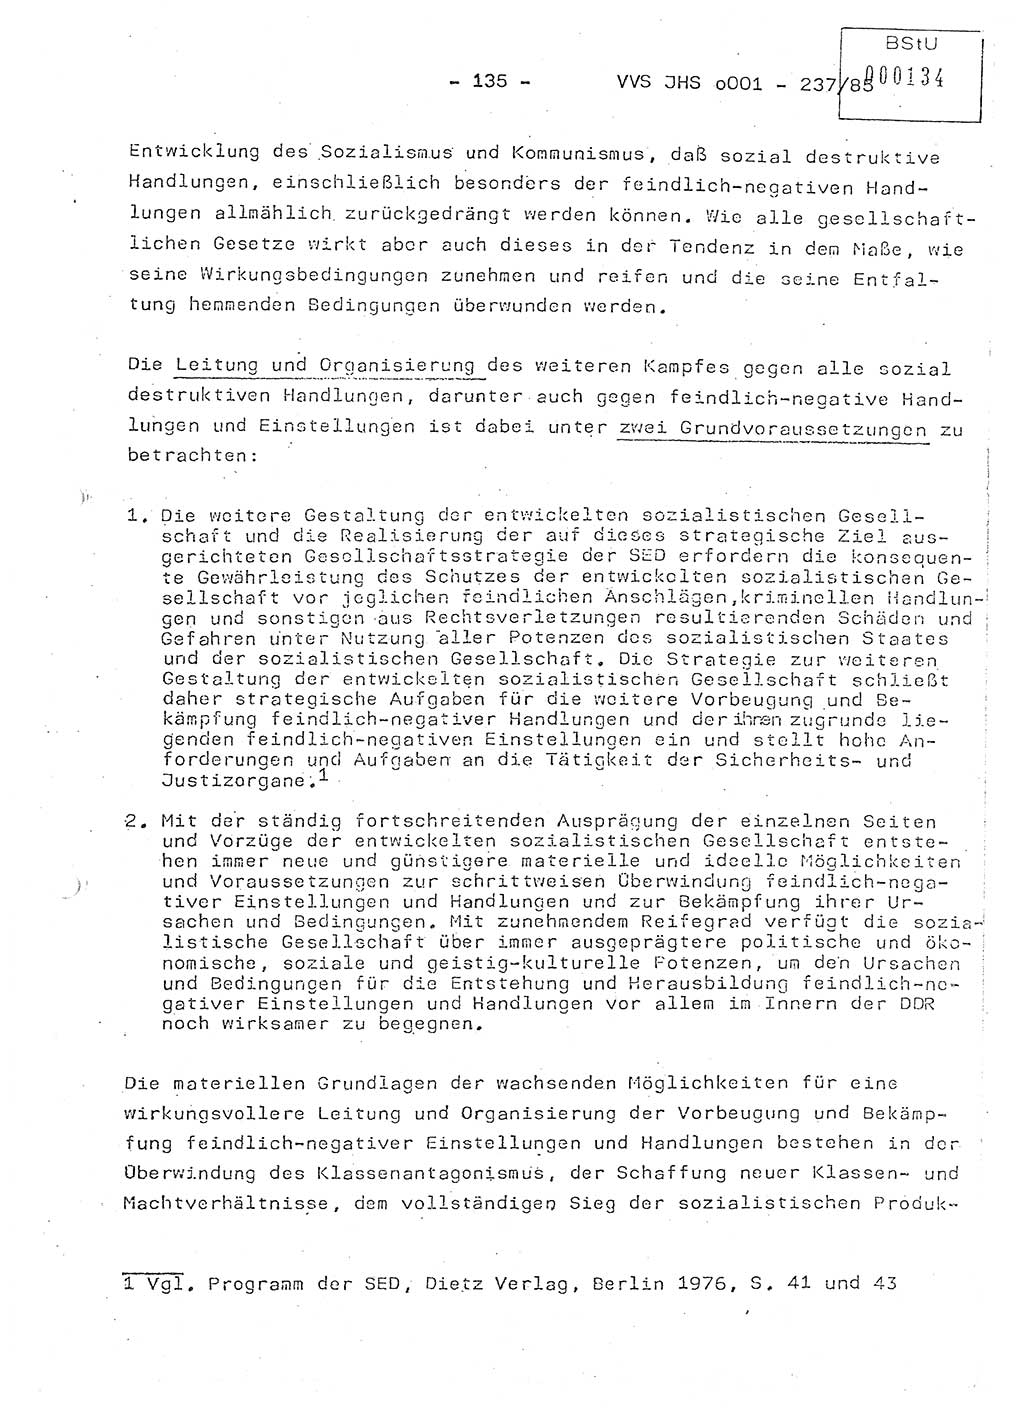 Dissertation Oberstleutnant Peter Jakulski (JHS), Oberstleutnat Christian Rudolph (HA Ⅸ), Major Horst Böttger (ZMD), Major Wolfgang Grüneberg (JHS), Major Albert Meutsch (JHS), Ministerium für Staatssicherheit (MfS) [Deutsche Demokratische Republik (DDR)], Juristische Hochschule (JHS), Vertrauliche Verschlußsache (VVS) o001-237/85, Potsdam 1985, Seite 135 (Diss. MfS DDR JHS VVS o001-237/85 1985, S. 135)